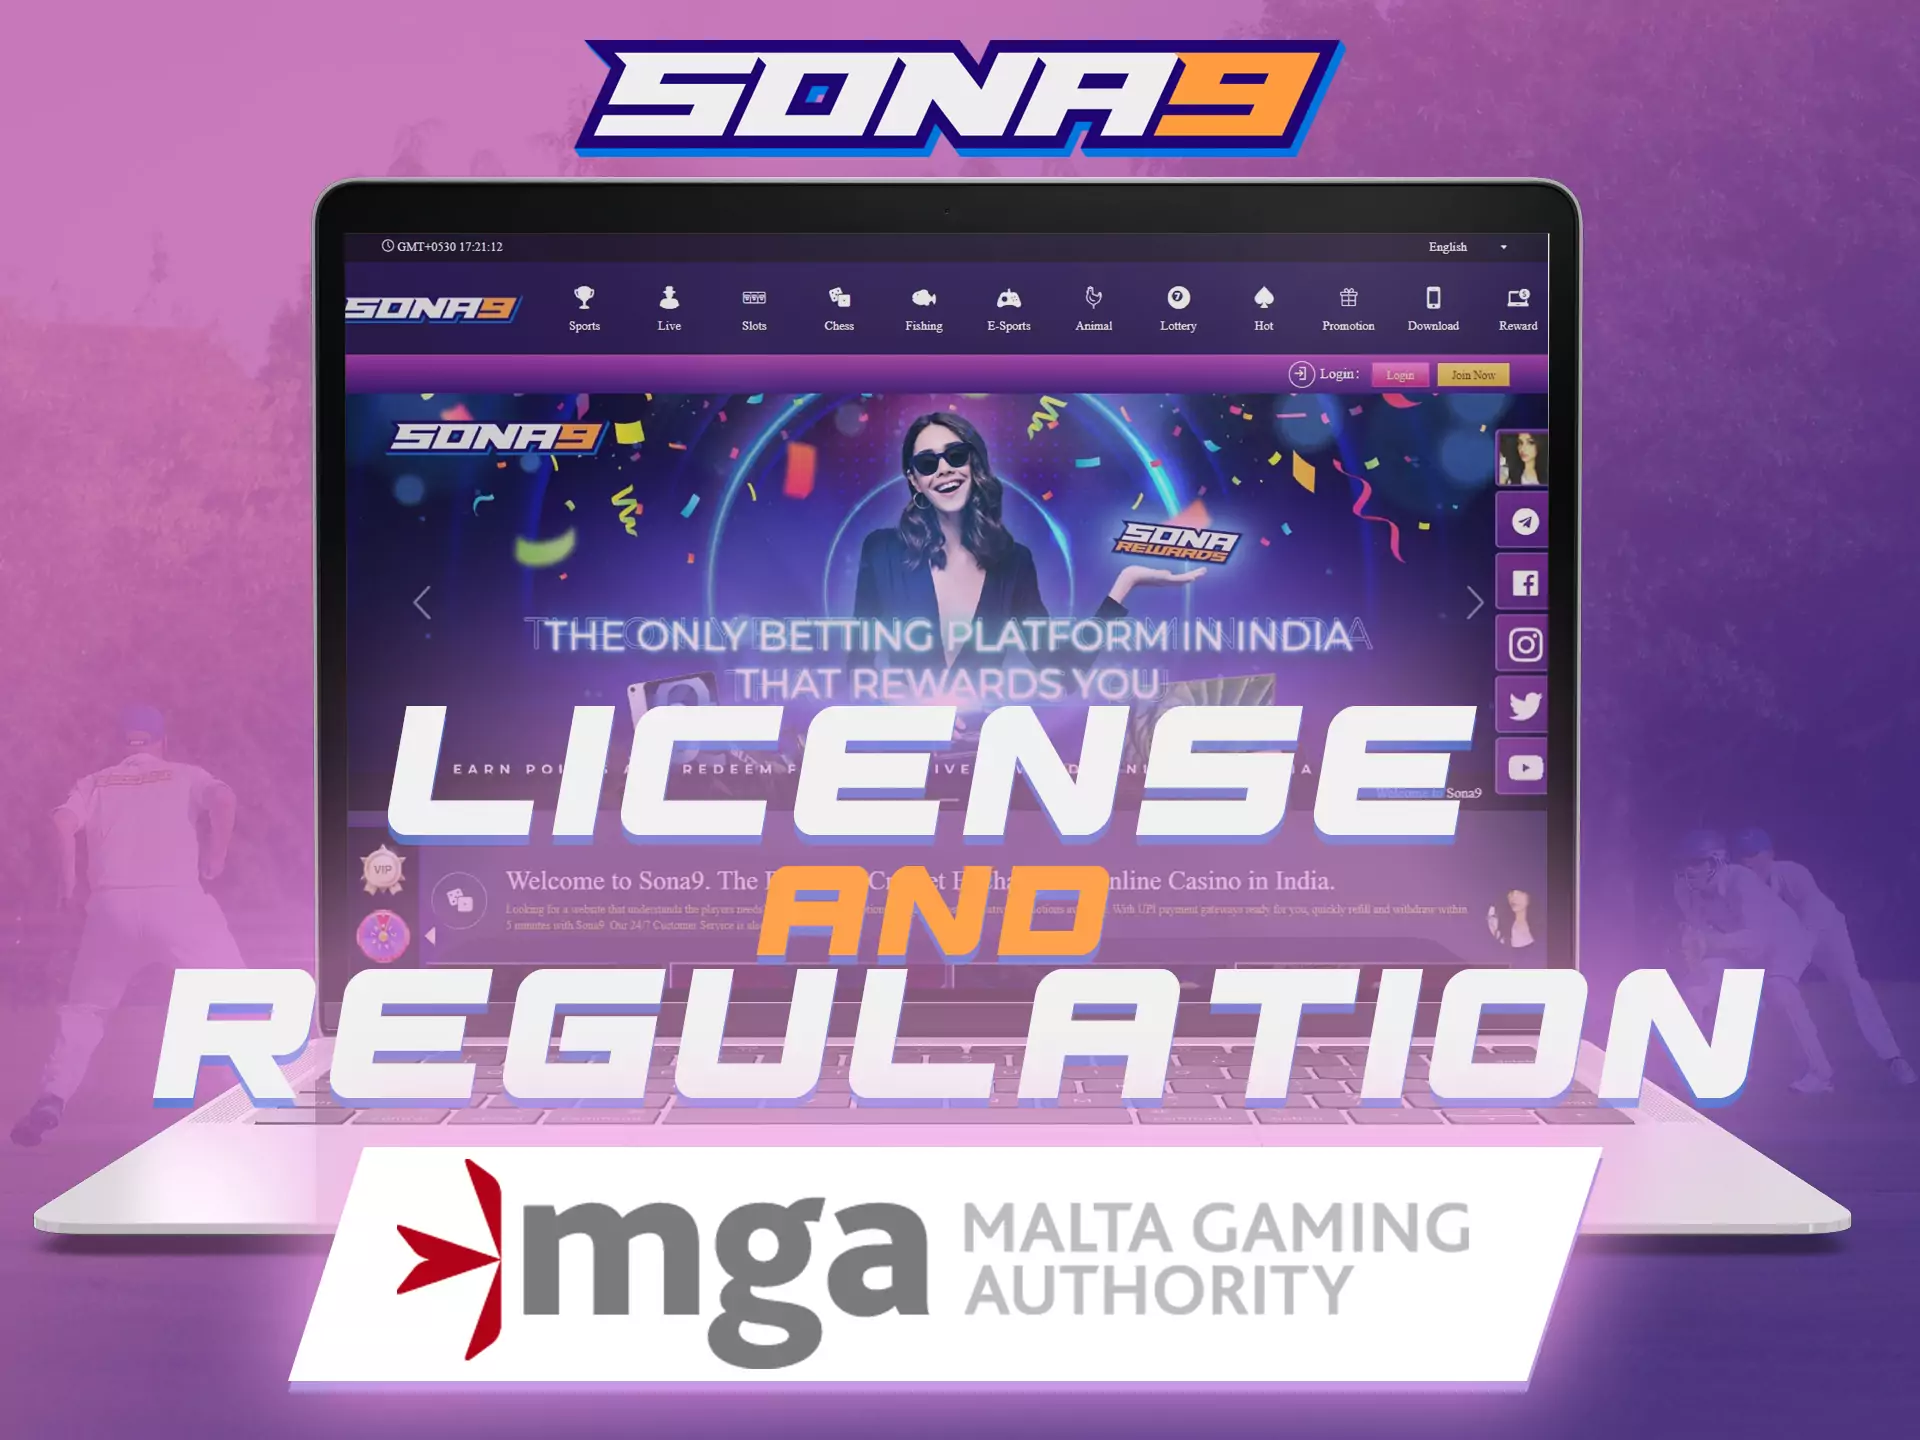 Malta Gaming Authority has already verified the Sona9 website.